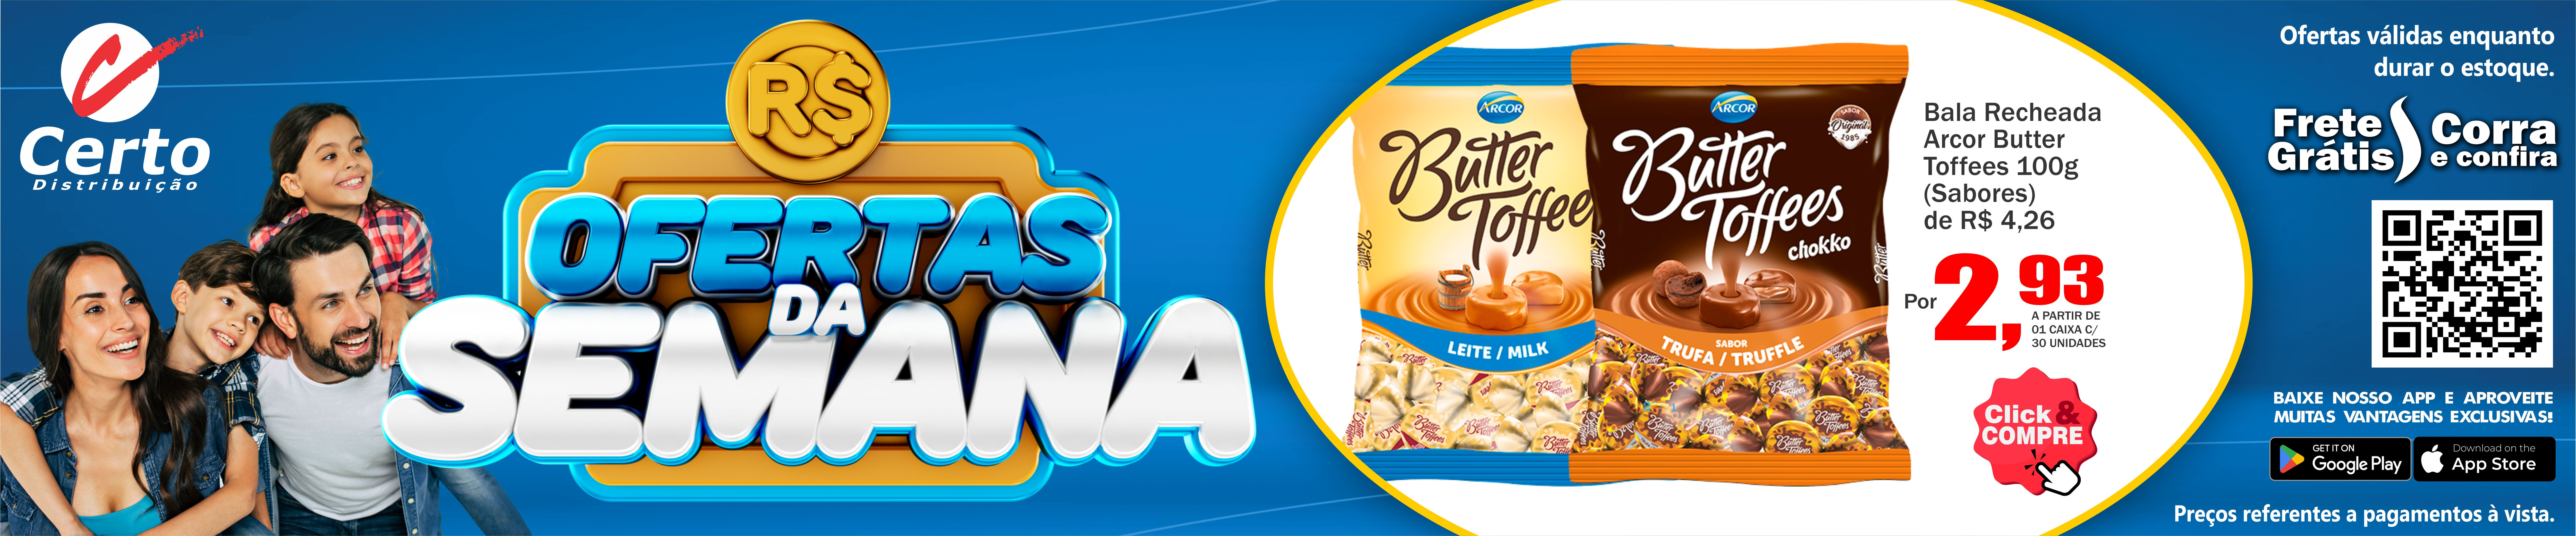 Bala Recheada Arcor Butter Toffees 100g!😀